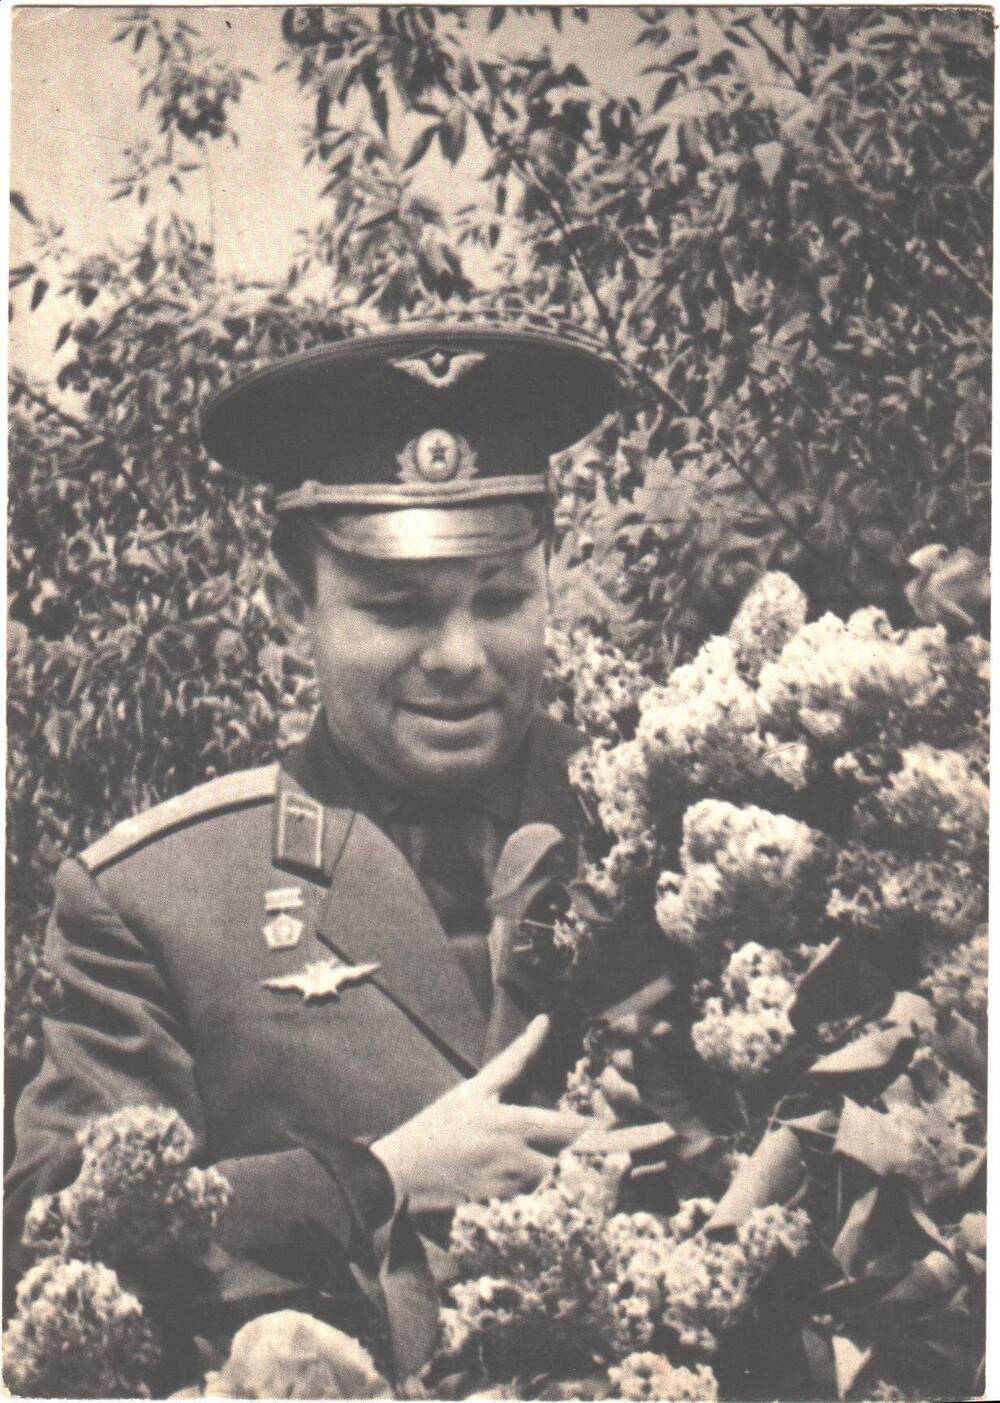 Ю.А.Гагарин на родной земле. Комплект открыток СССР Юрий Гагарин. Москва 1970 г. Фото А.Лукашенко. 